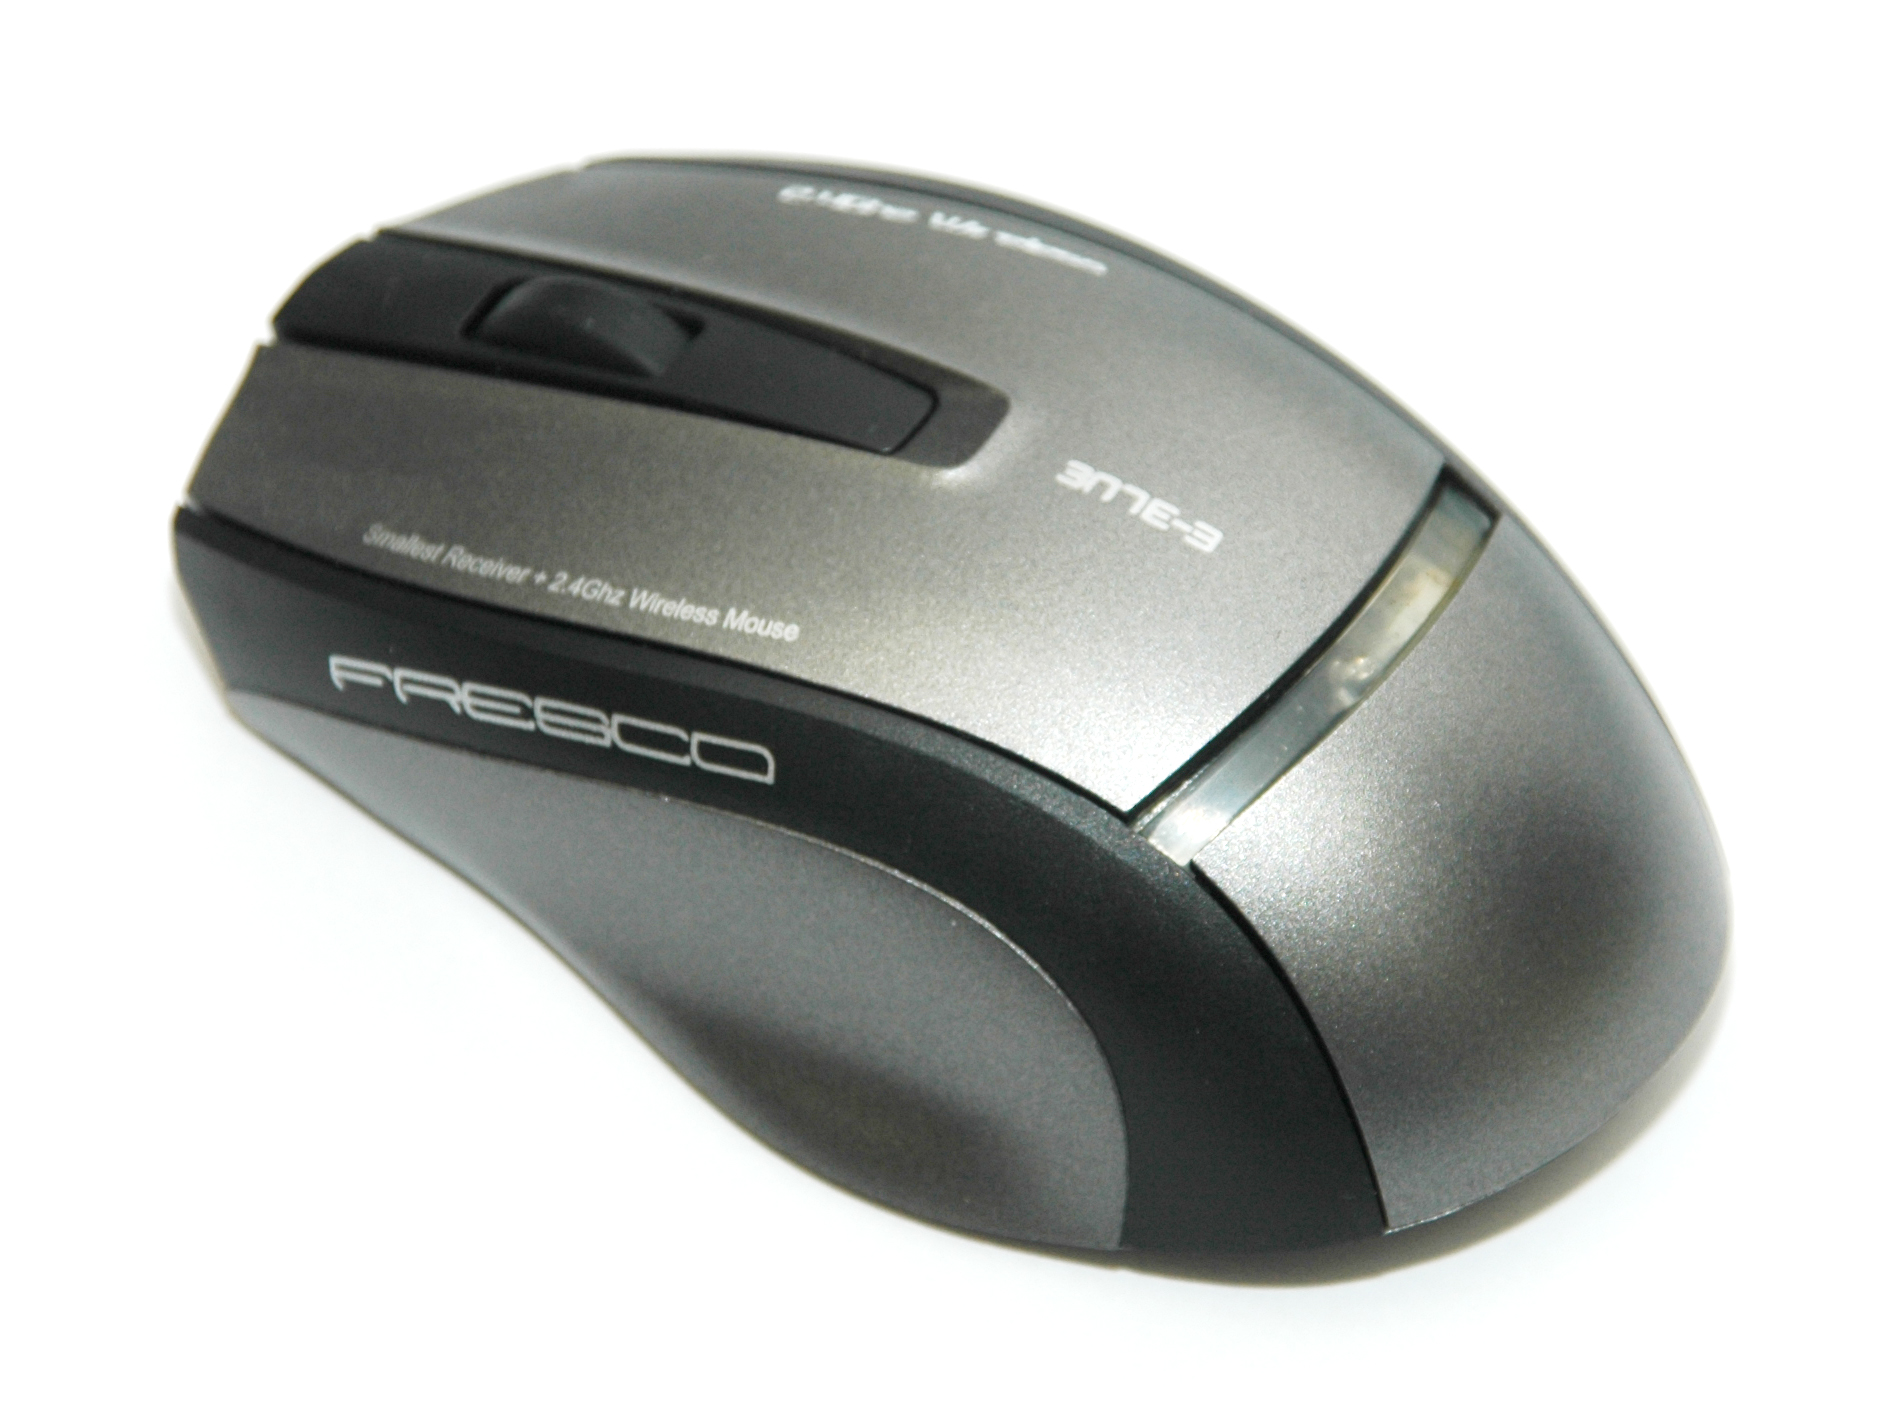 Fresco 2.4G Wireless Optical Mouse